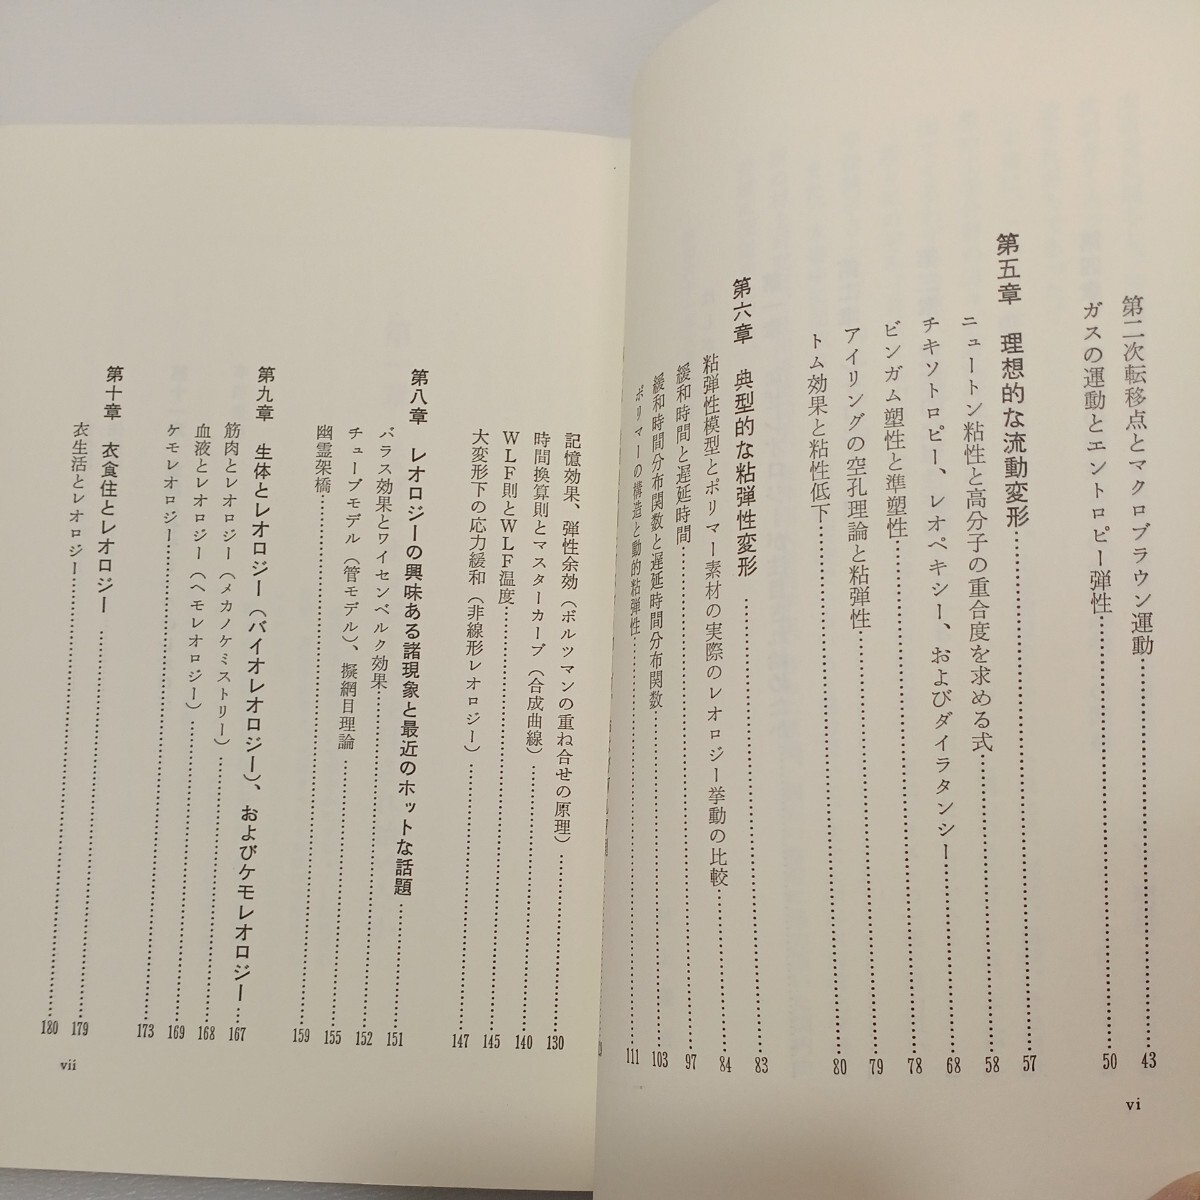 zaa561♪やさしいレオロジ-: 基礎から最先端まで 単行本 1986/7/1 村上 謙吉 (著) 産業図書 (1986/7/1)